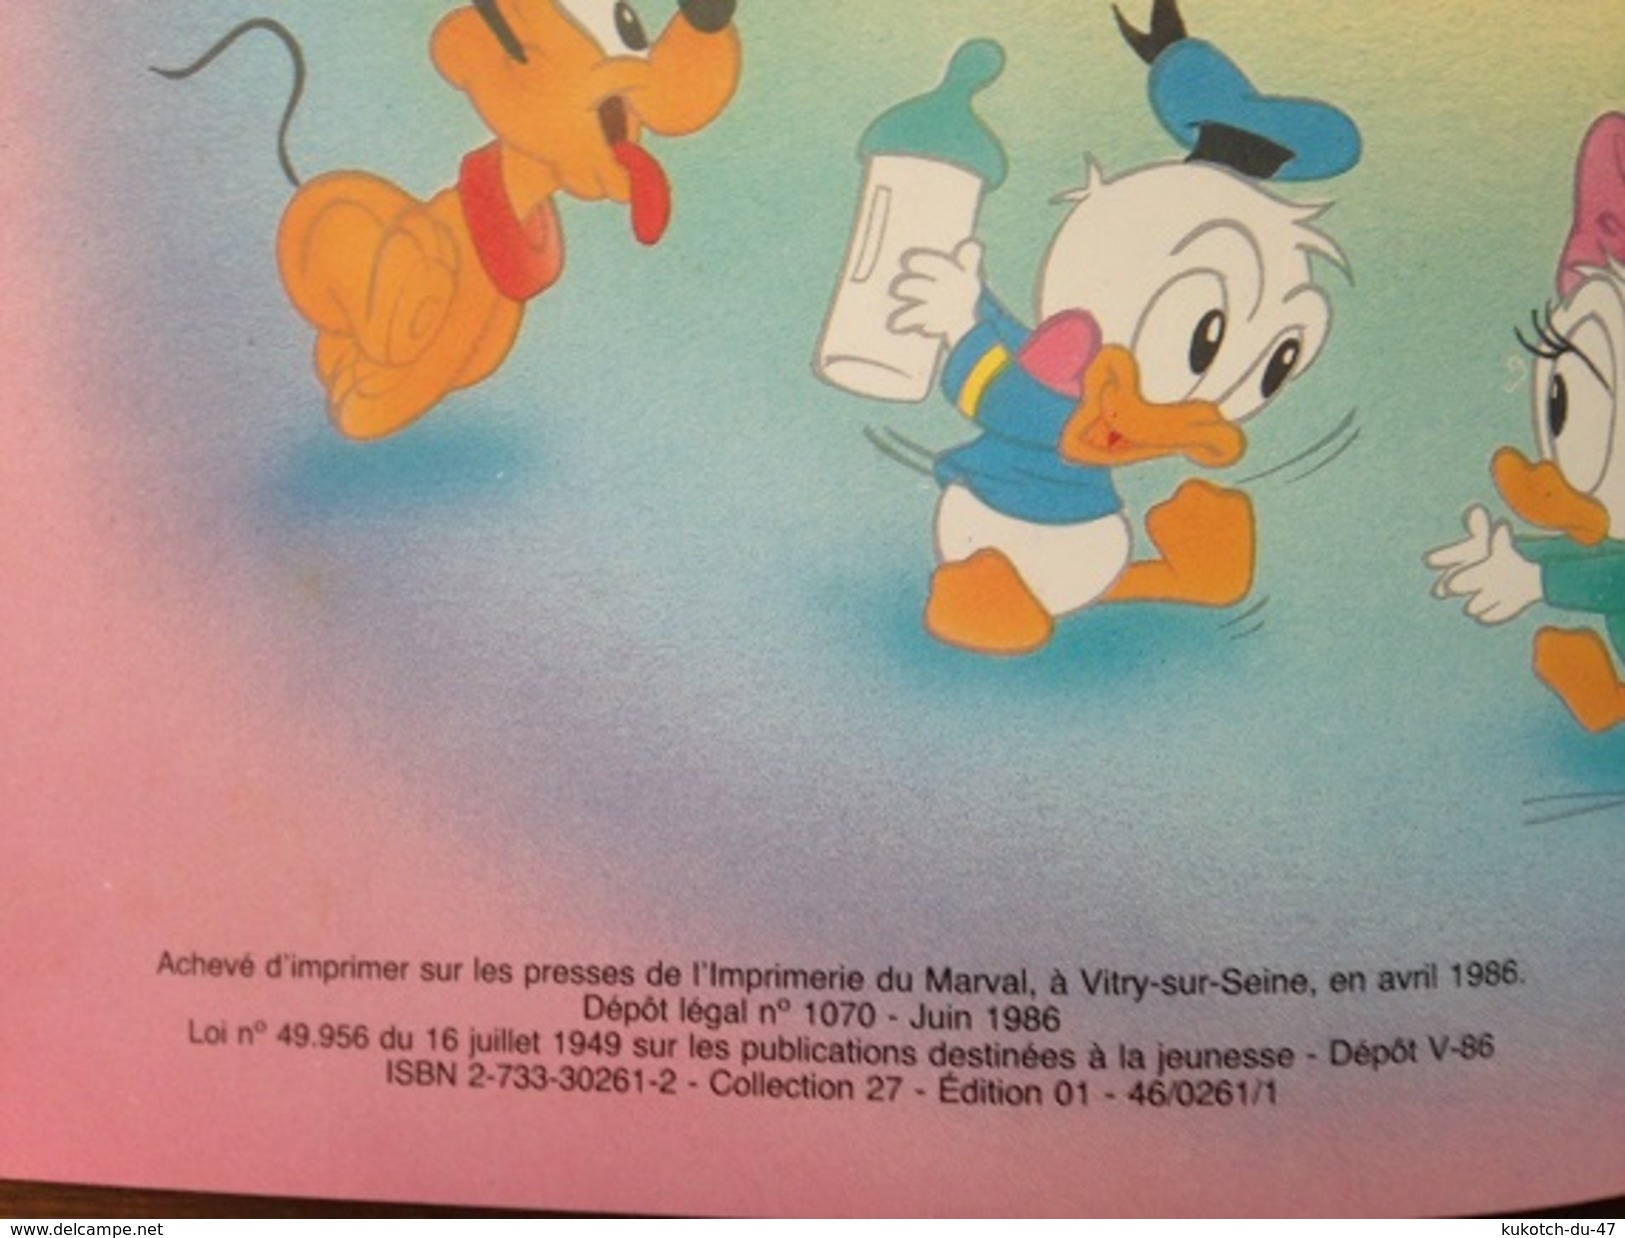 Disney - Les découvertes de Bébé Daisy (1986)